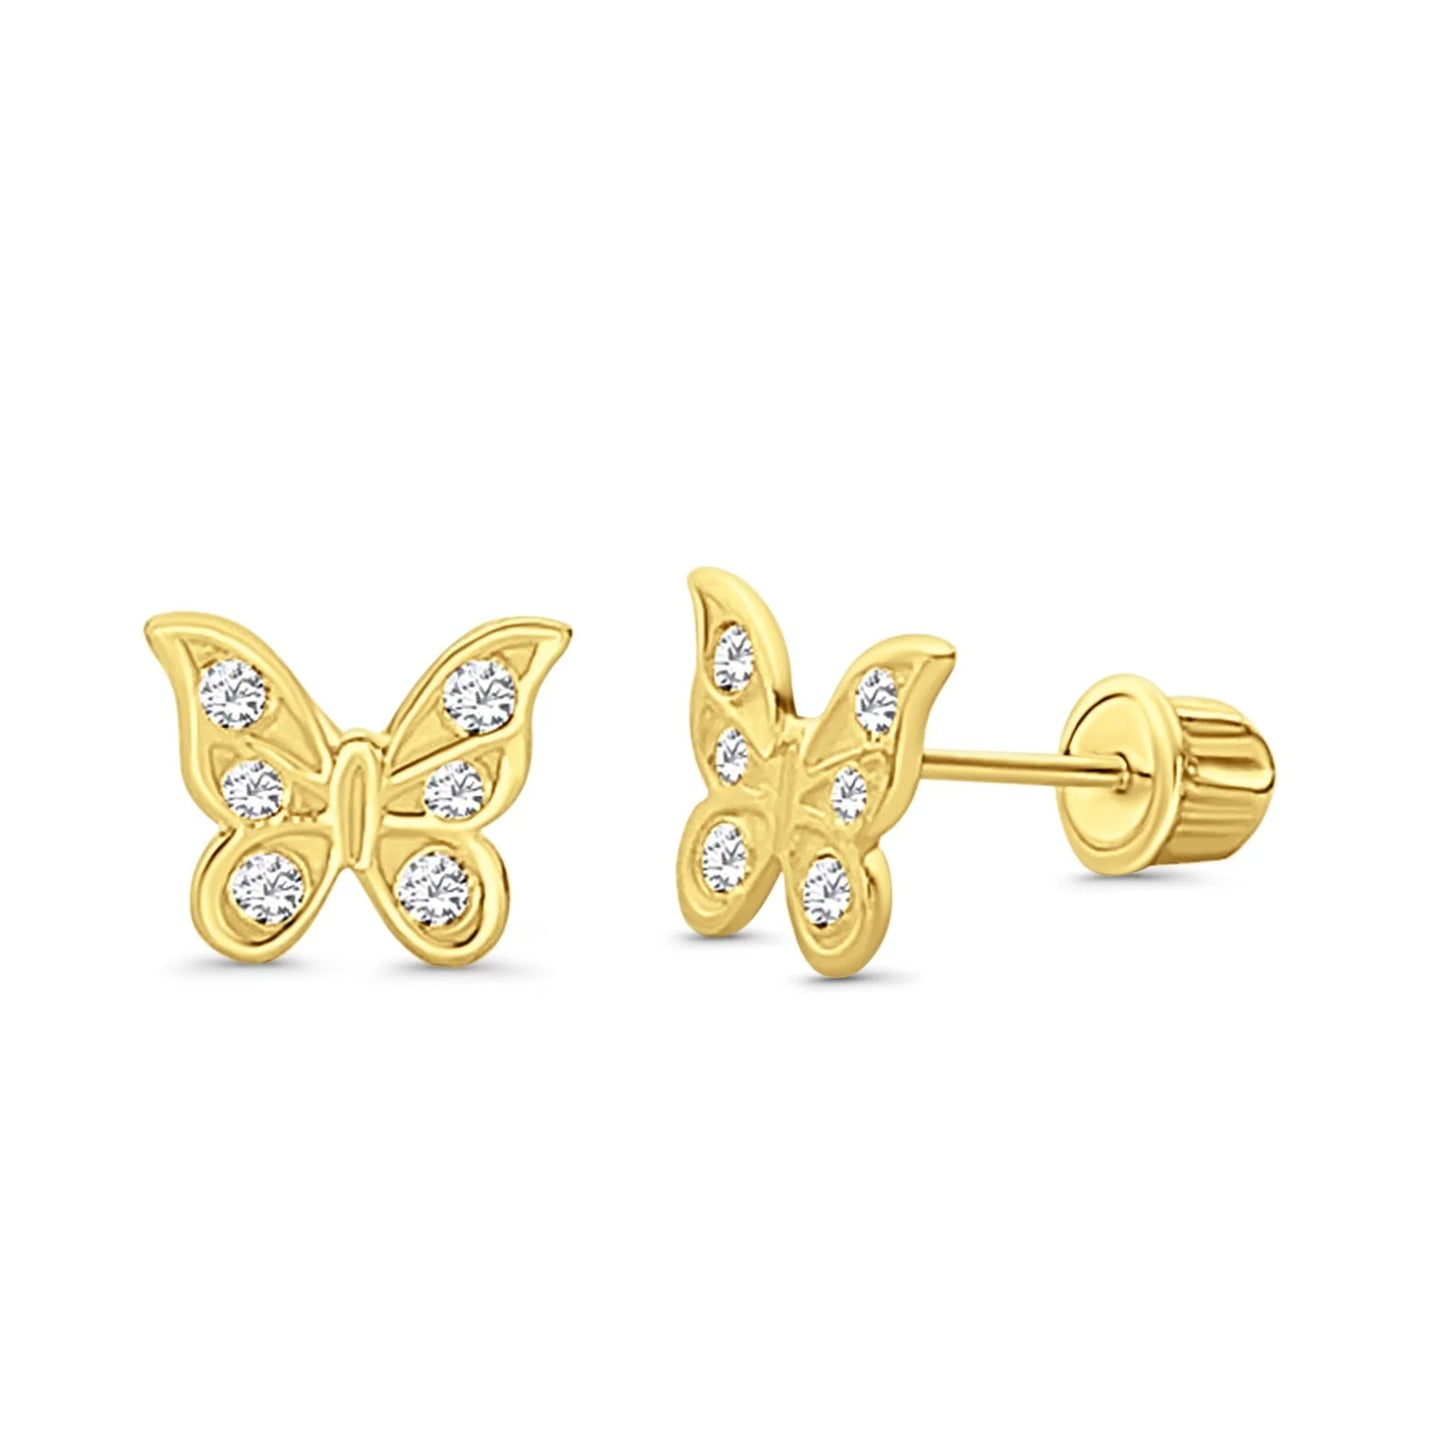 Children's Earrings:  14k Gold, Triple Clear CZ Butterflies with Screw Backs